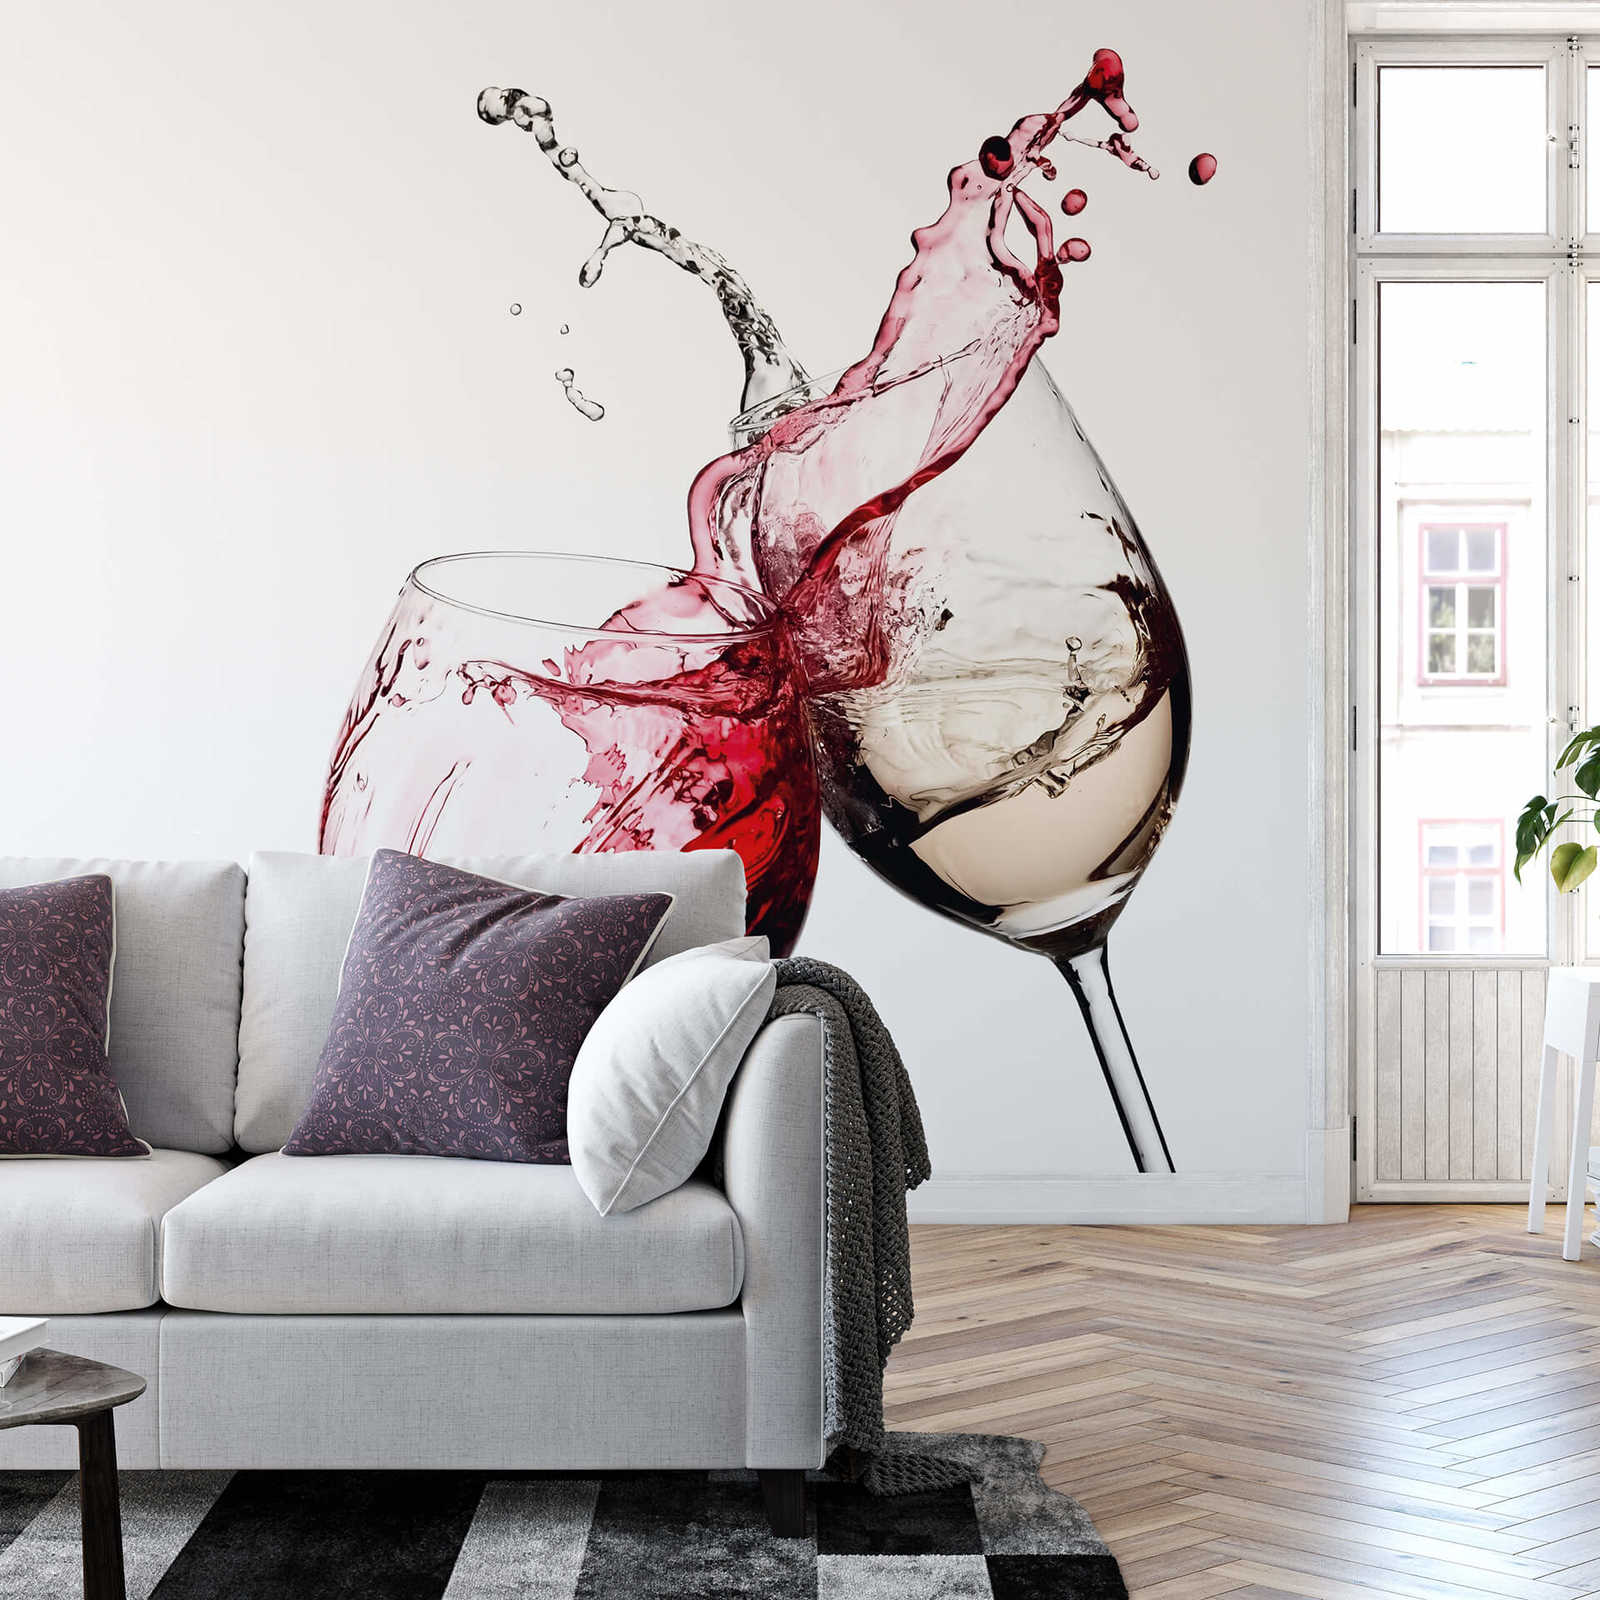             Papel pintado de cocina Copas de vino rojo y blanco
        